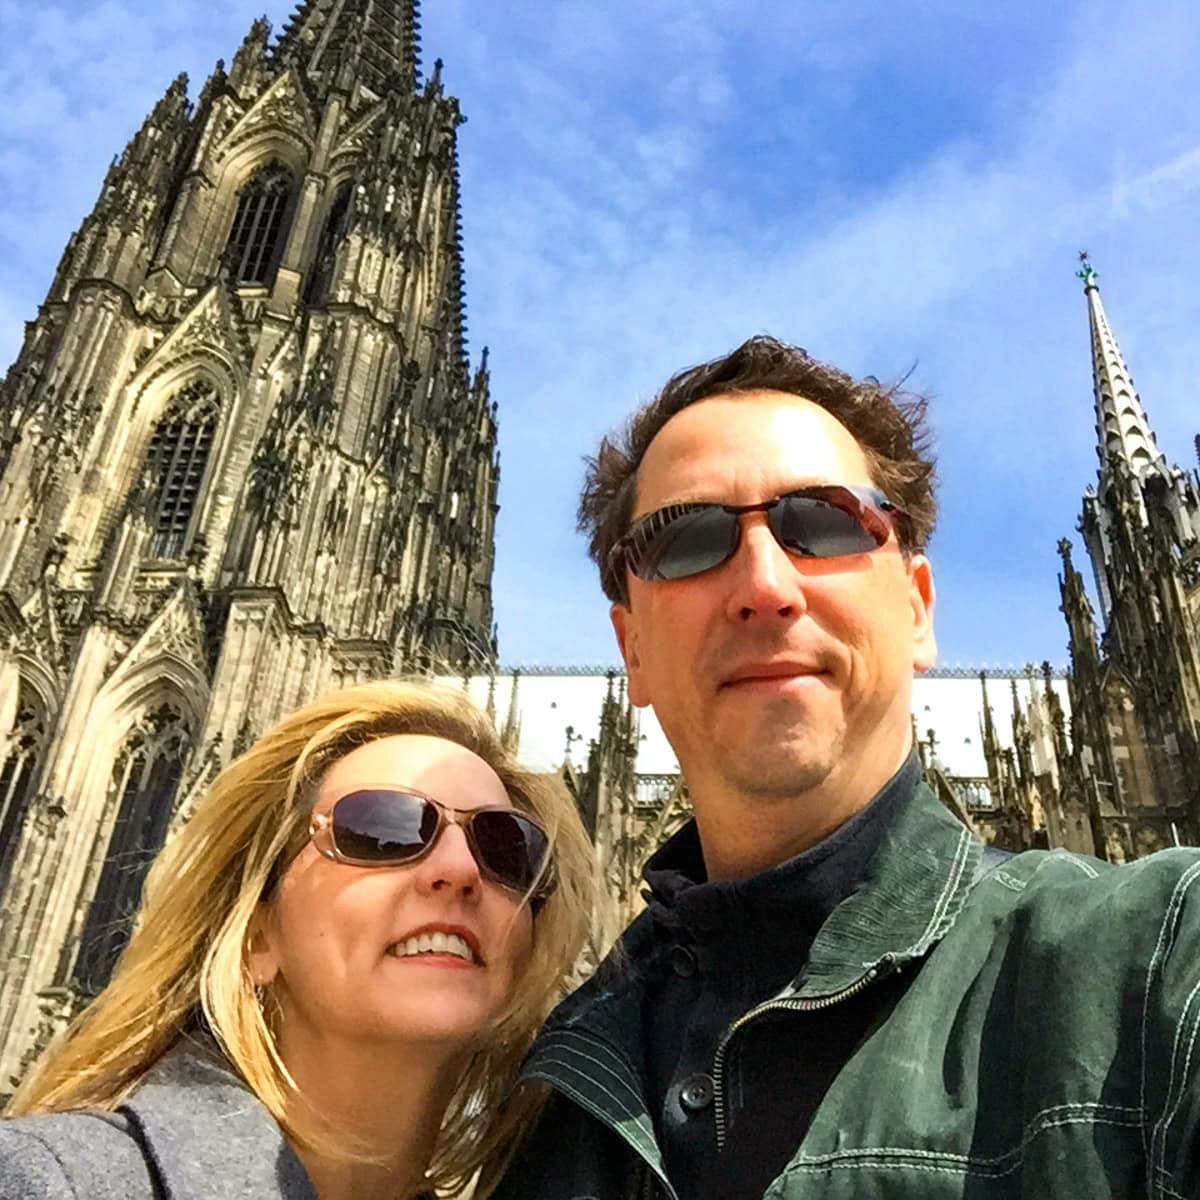 Casal posando em frente à Catedral de Colônia